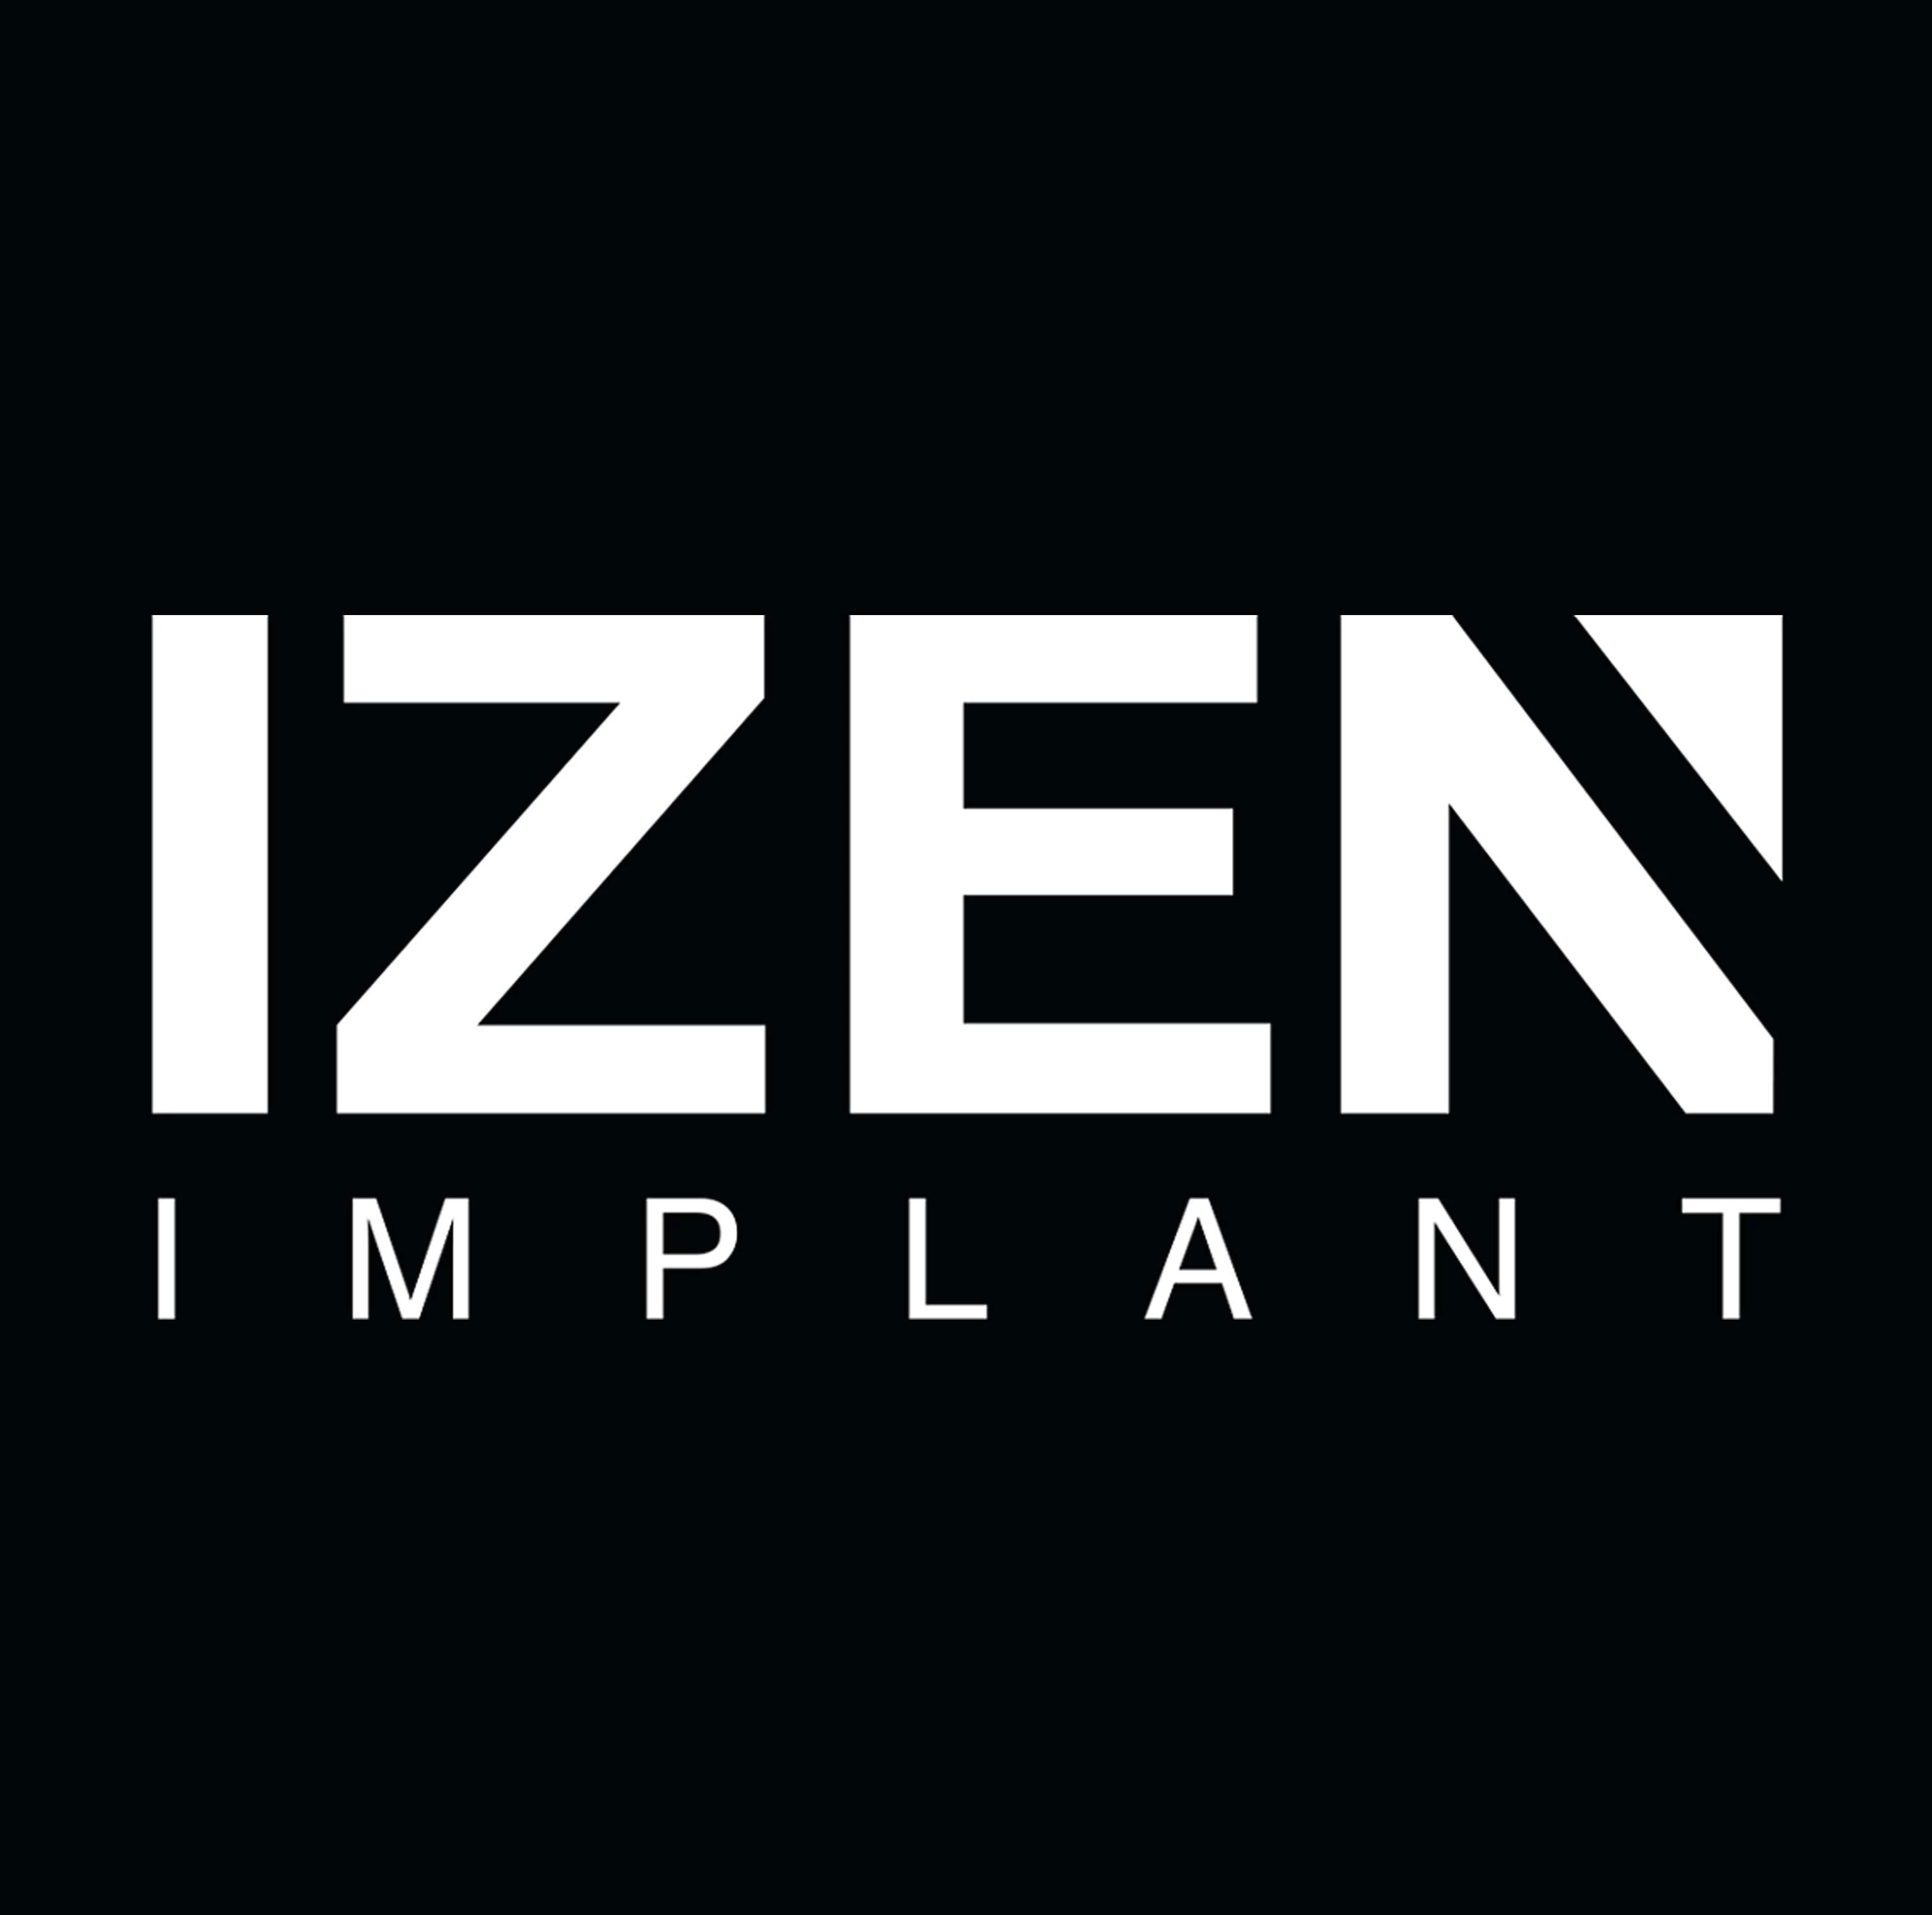 Izen Implant